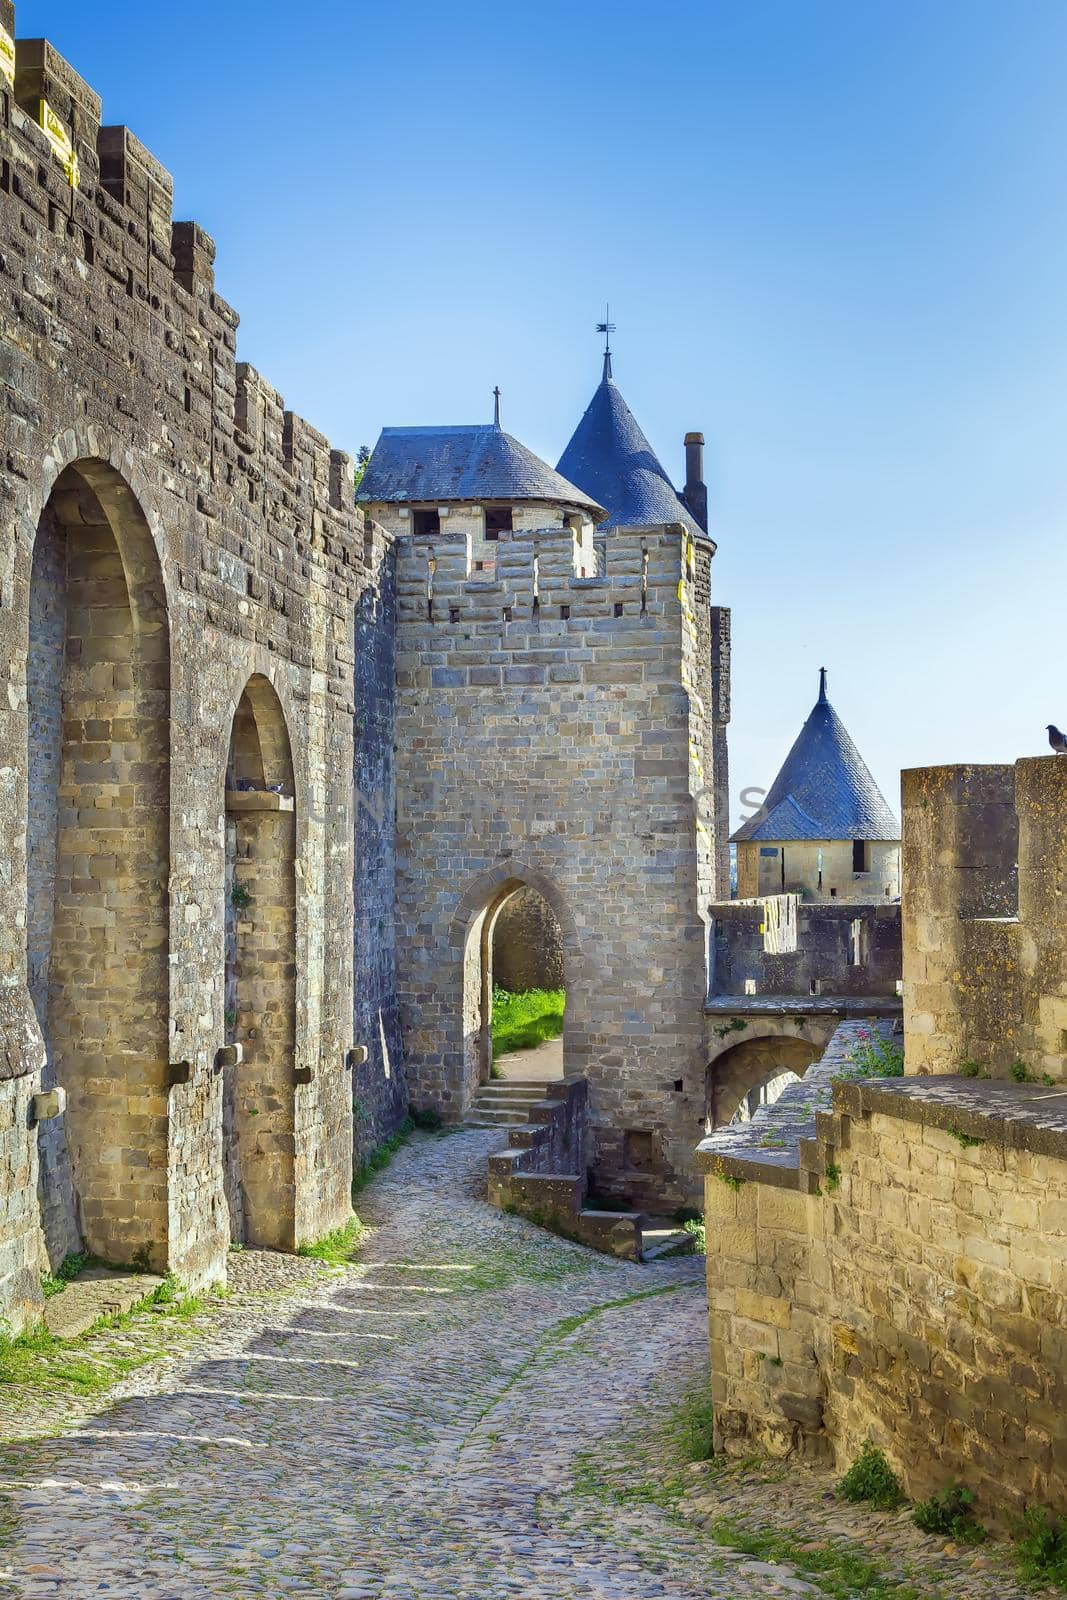 Cite de Carcassonne, France by borisb17